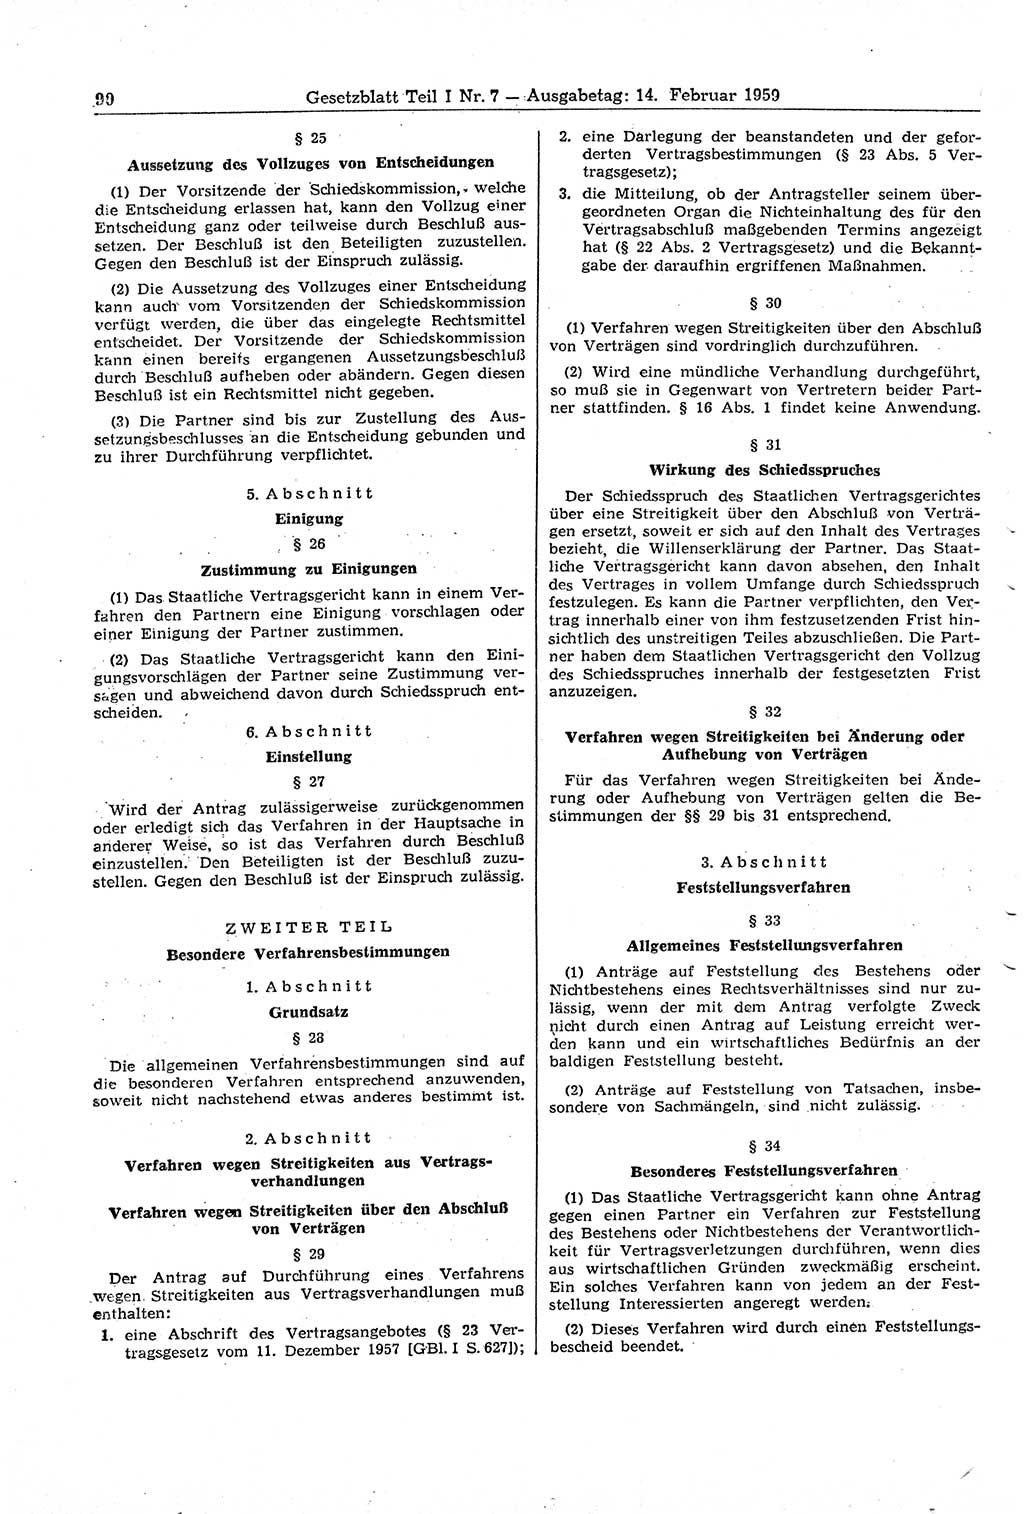 Gesetzblatt (GBl.) der Deutschen Demokratischen Republik (DDR) Teil Ⅰ 1959, Seite 90 (GBl. DDR Ⅰ 1959, S. 90)